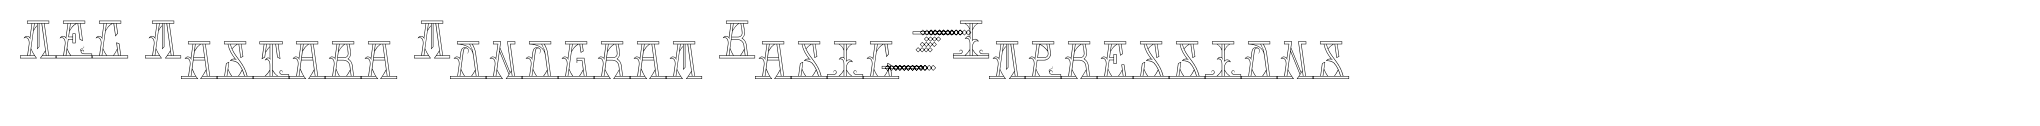 MFC Mastaba Monogram Basic 10000 Impressions image